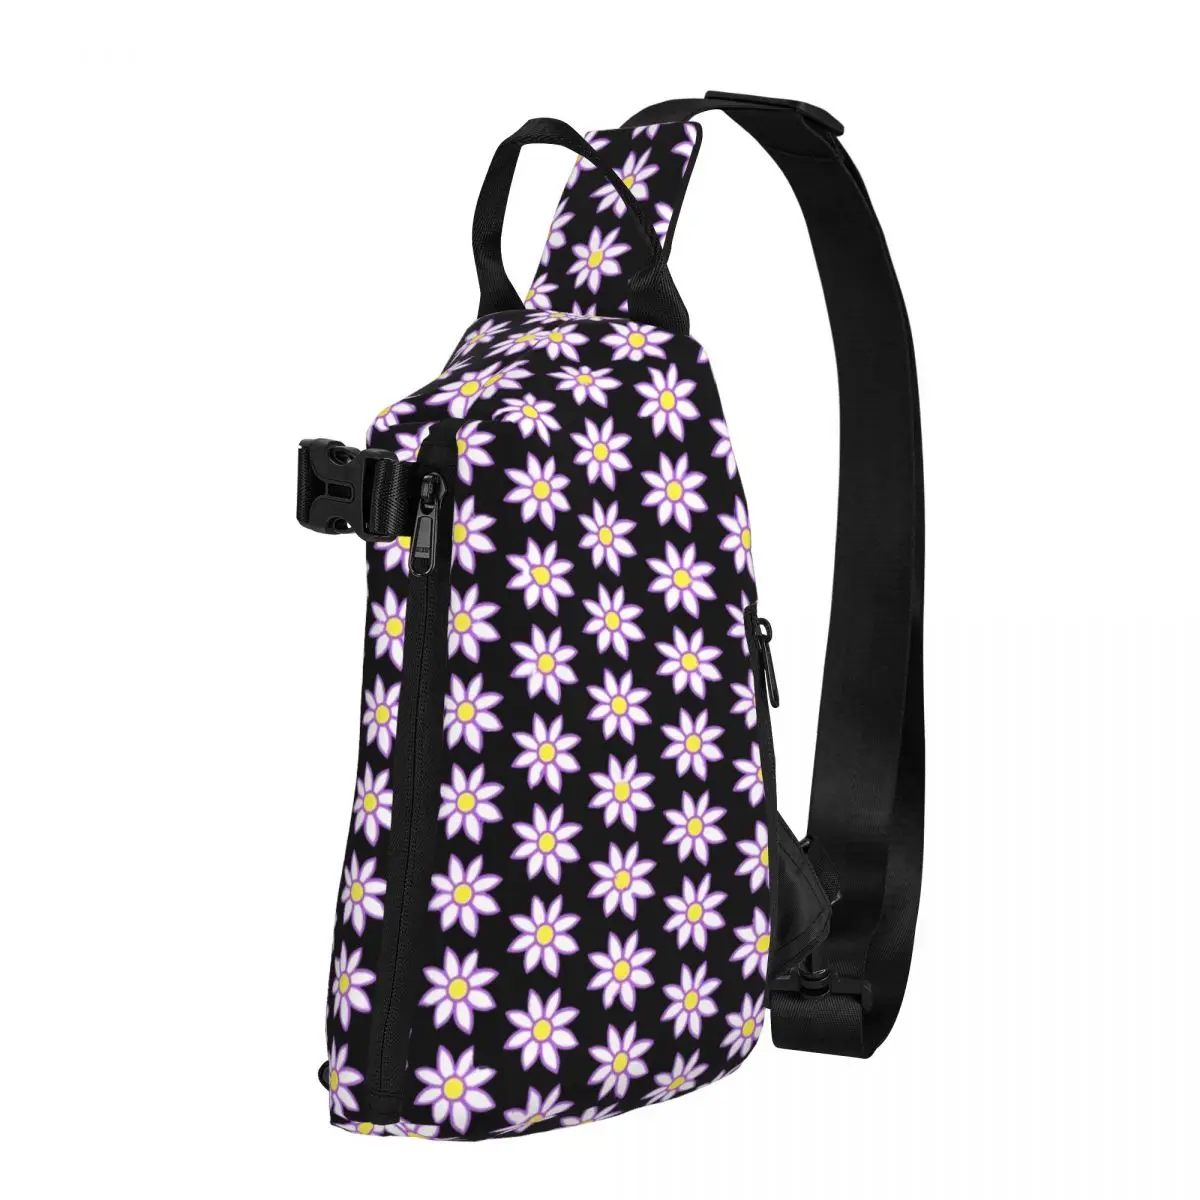 

Розовая сумка через плечо с цветочным принтом, забавная нагрудная сумка с цветочным принтом, унисекс, сумка-слинг для телефона и трекинга, маленькие сумки с графическим принтом для бега